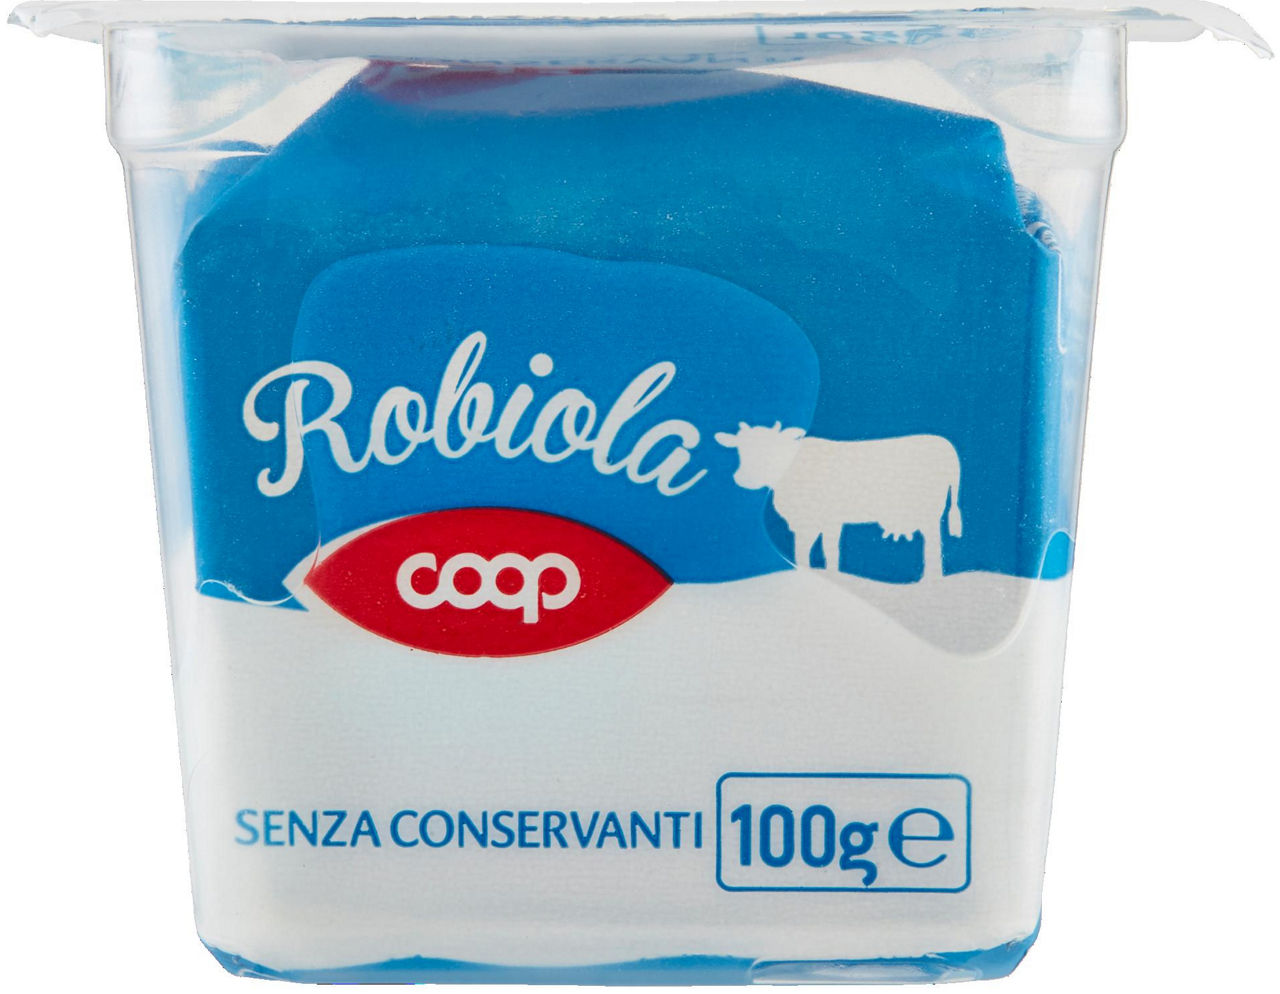 Robiola coop vaschetta g 100